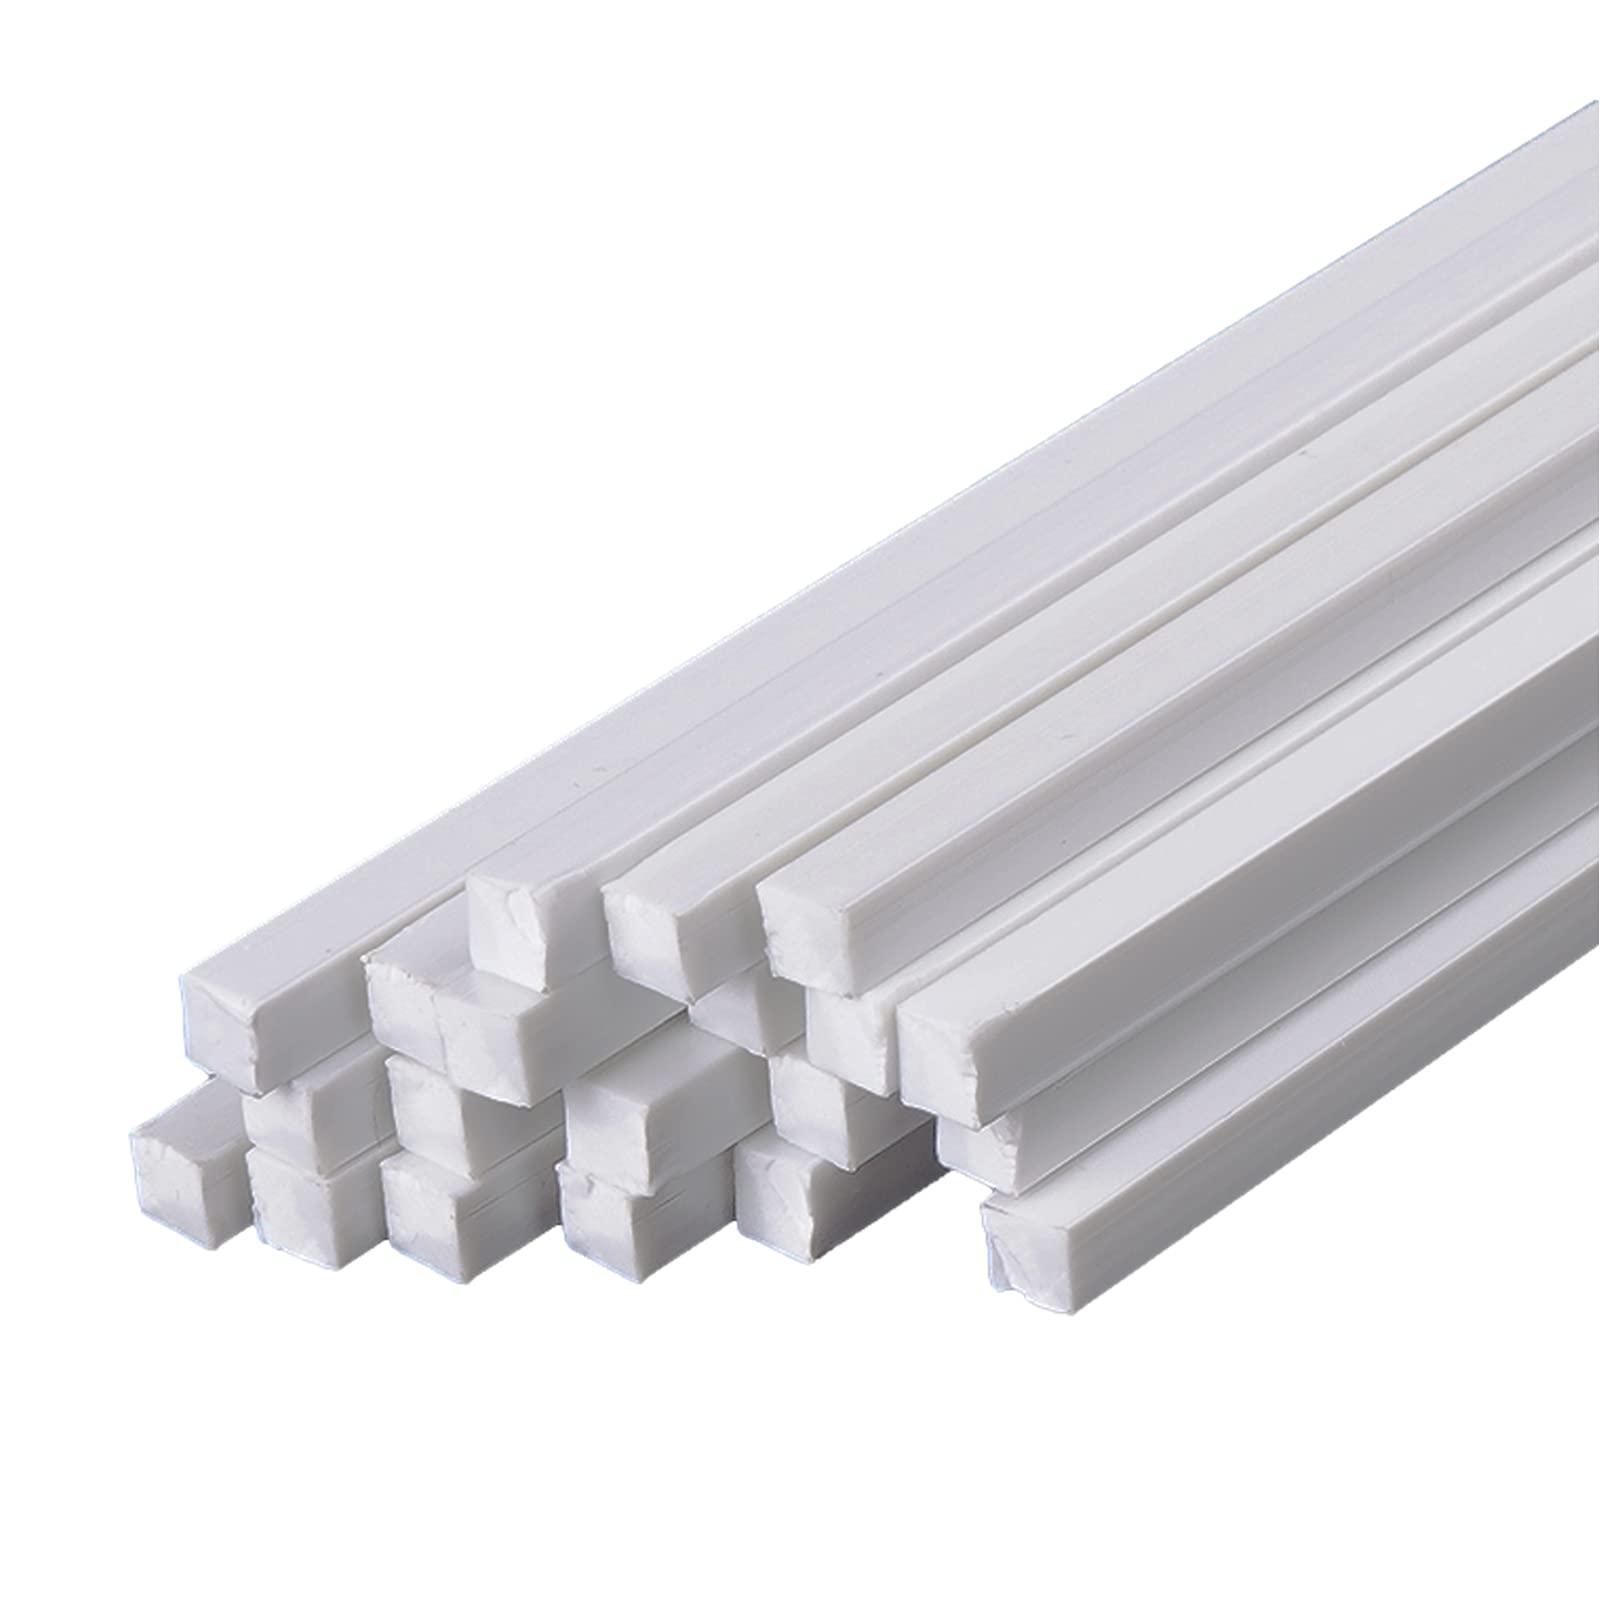 20 Stück ABS Massiver Quadratischer Stab Länge 500 mm Seitenlänge 2-6 mm Weißer Kunststoffstab Gute Zähigkeit Und Festigkeit,4×4×500mm